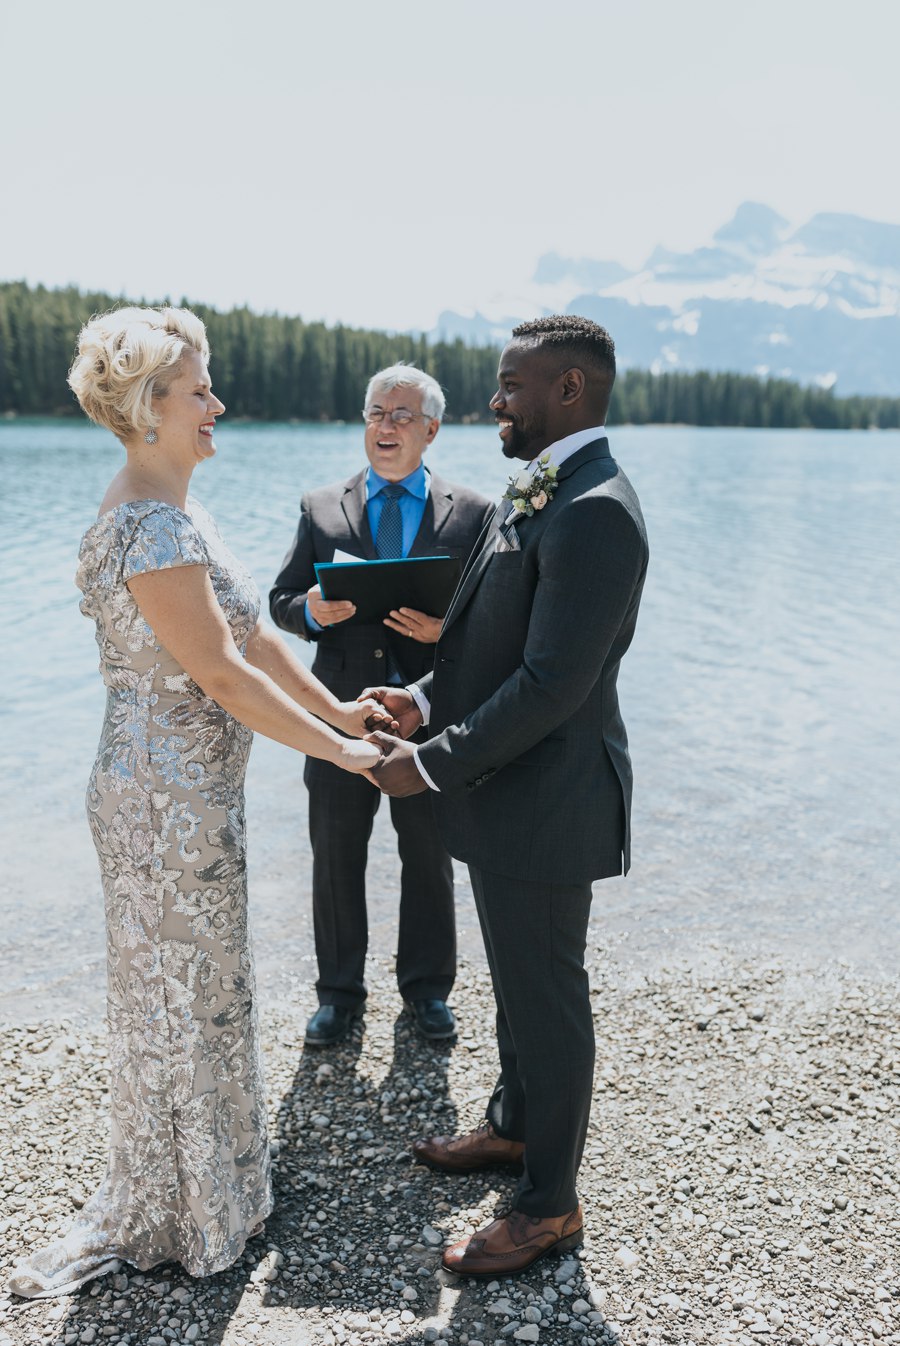 Banff outdoor elopement ceremony